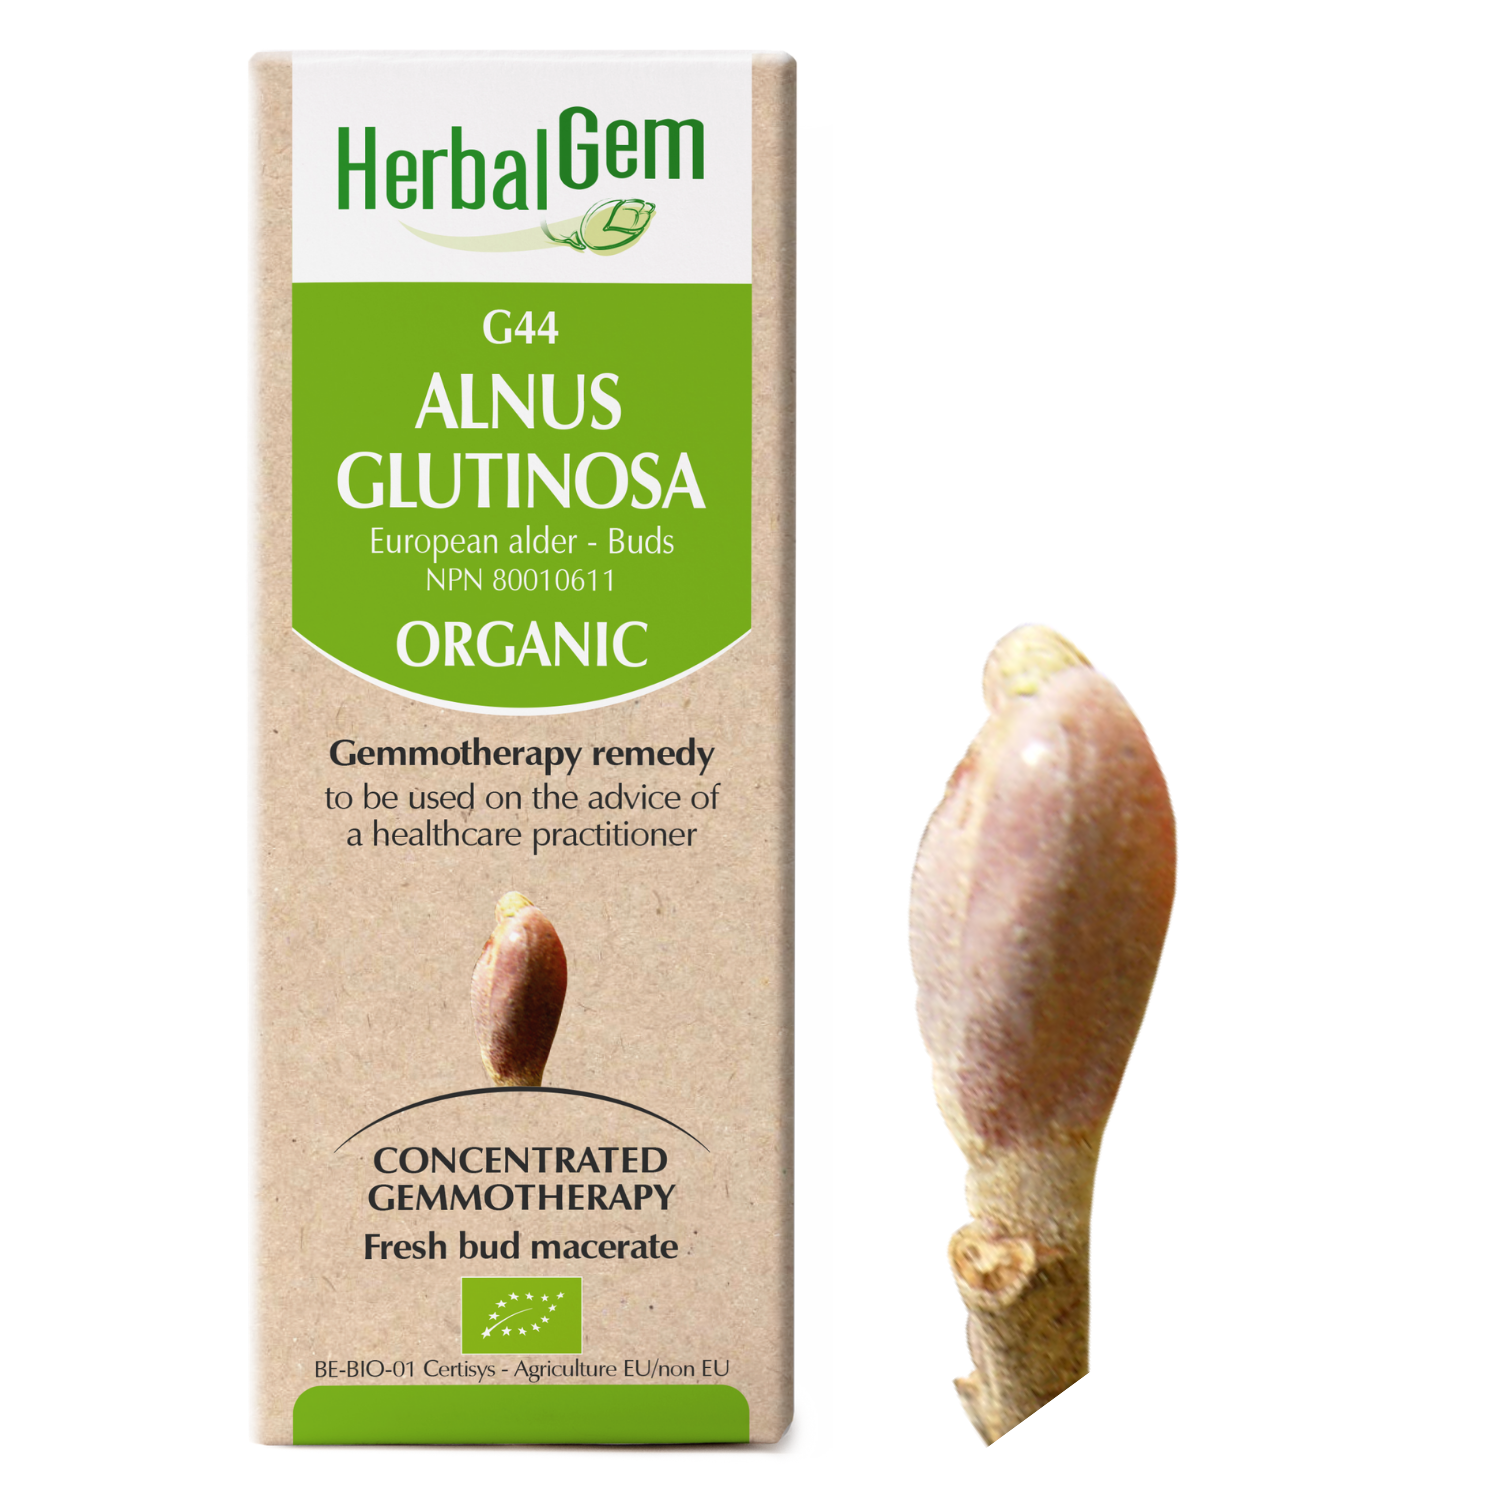 G44 Alnus glutinosa Gemmotherapy remedy Organic European alder Buds